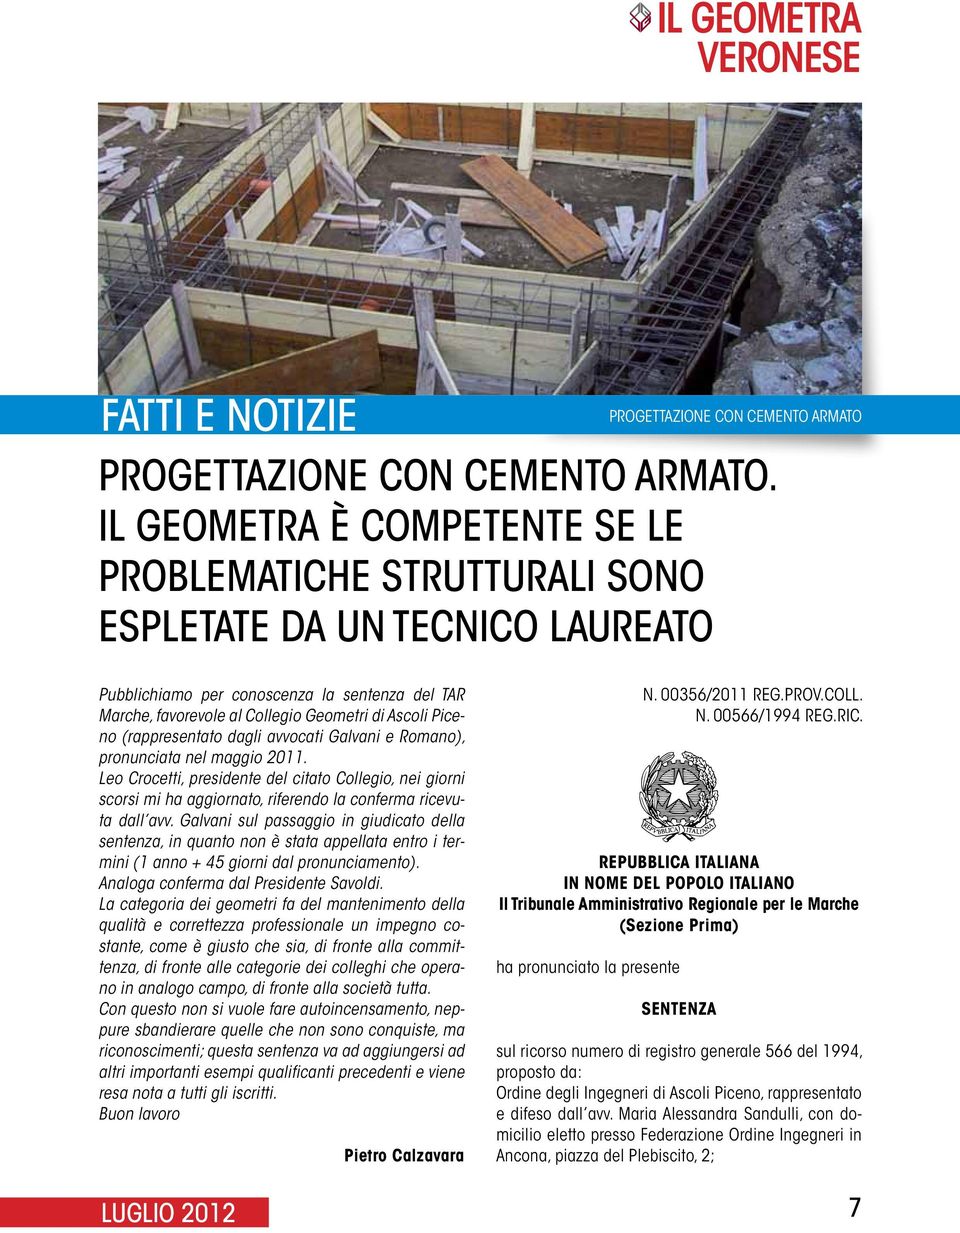 Collegio Geometri di Ascoli Piceno (rappresentato dagli avvocati Galvani e Romano), pronunciata nel maggio 2011.